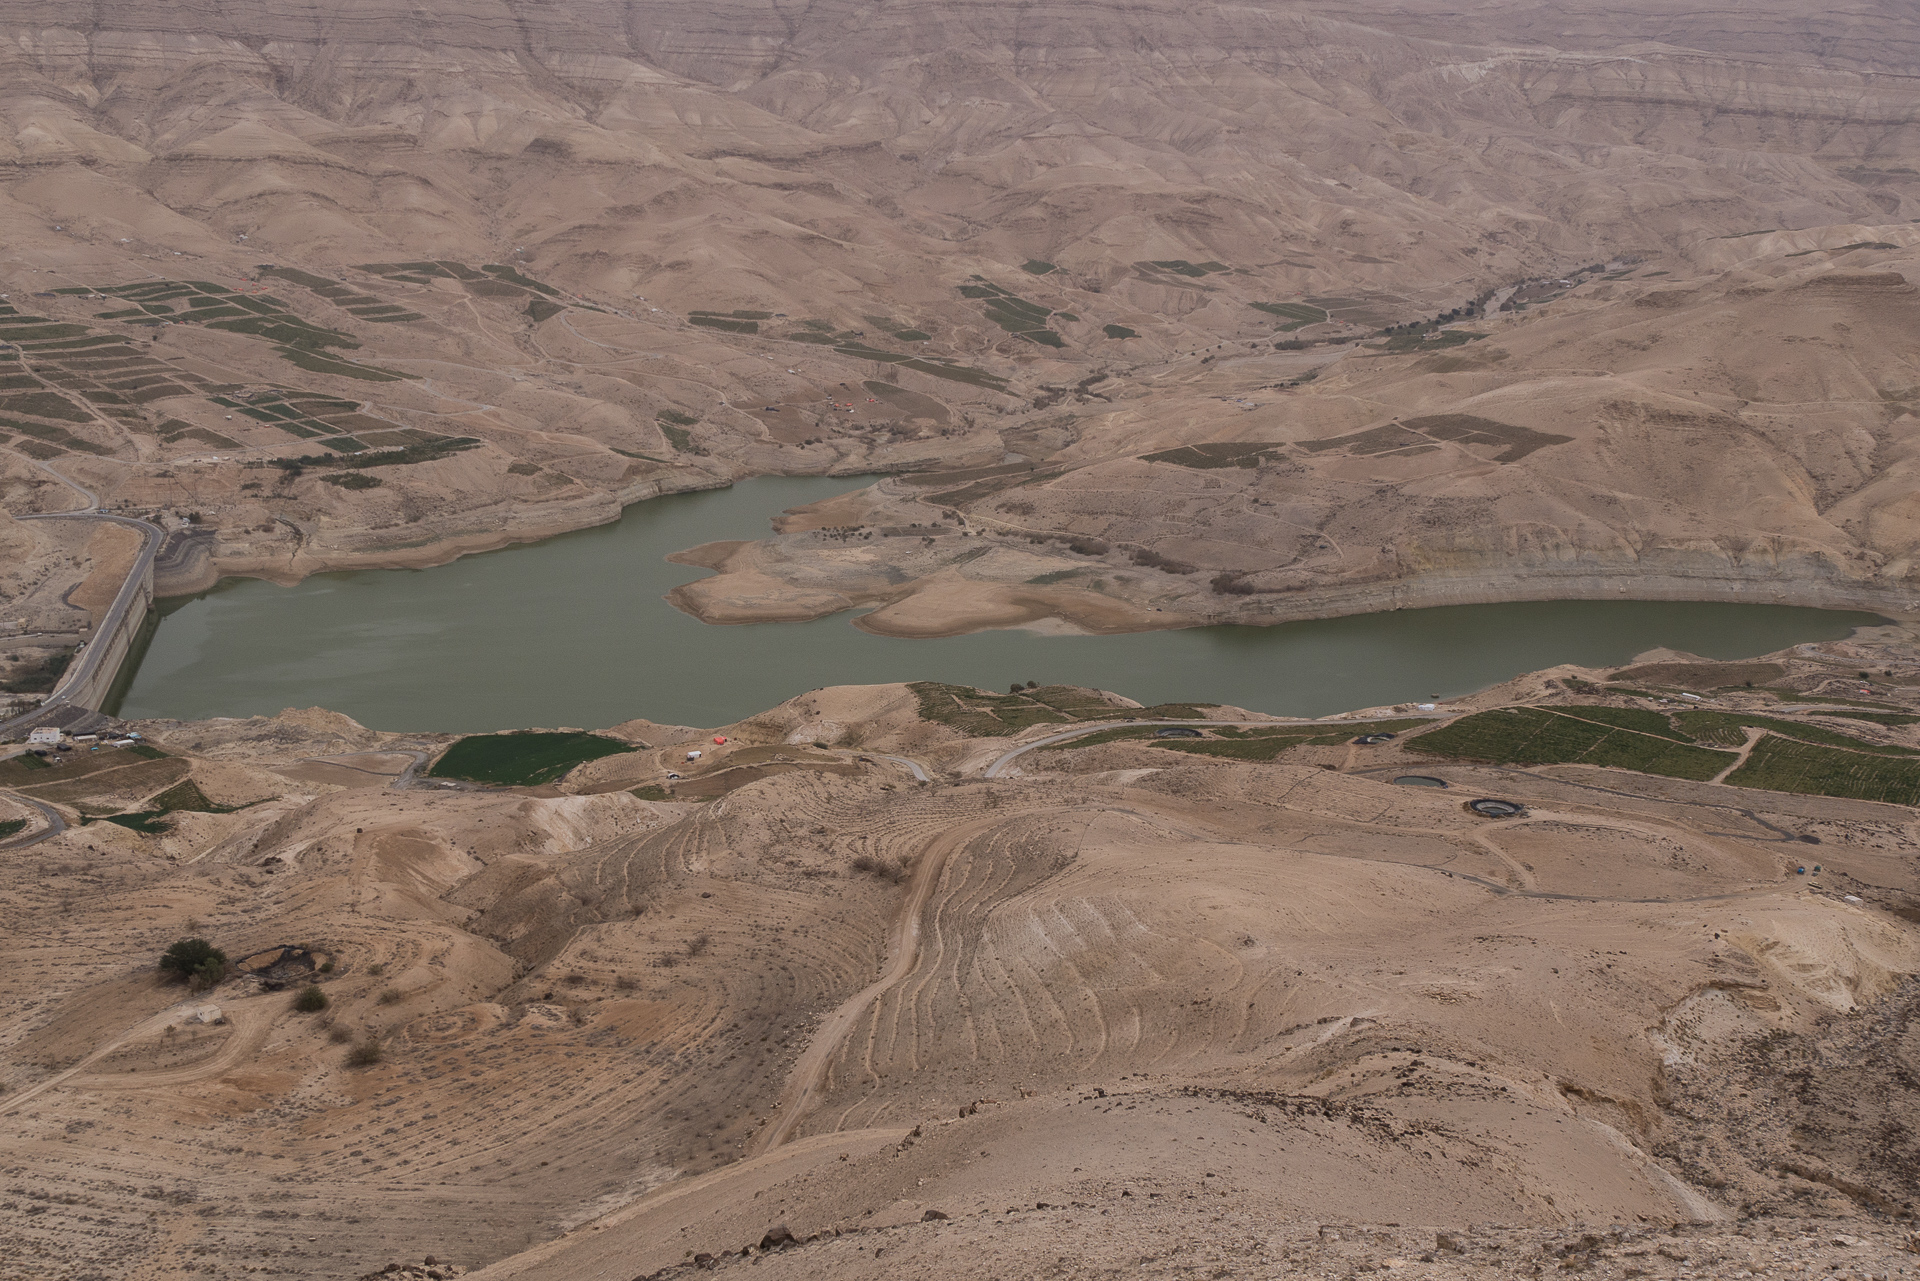 Barage sur le wadi Al Mujib - Une semaine en Jordanie